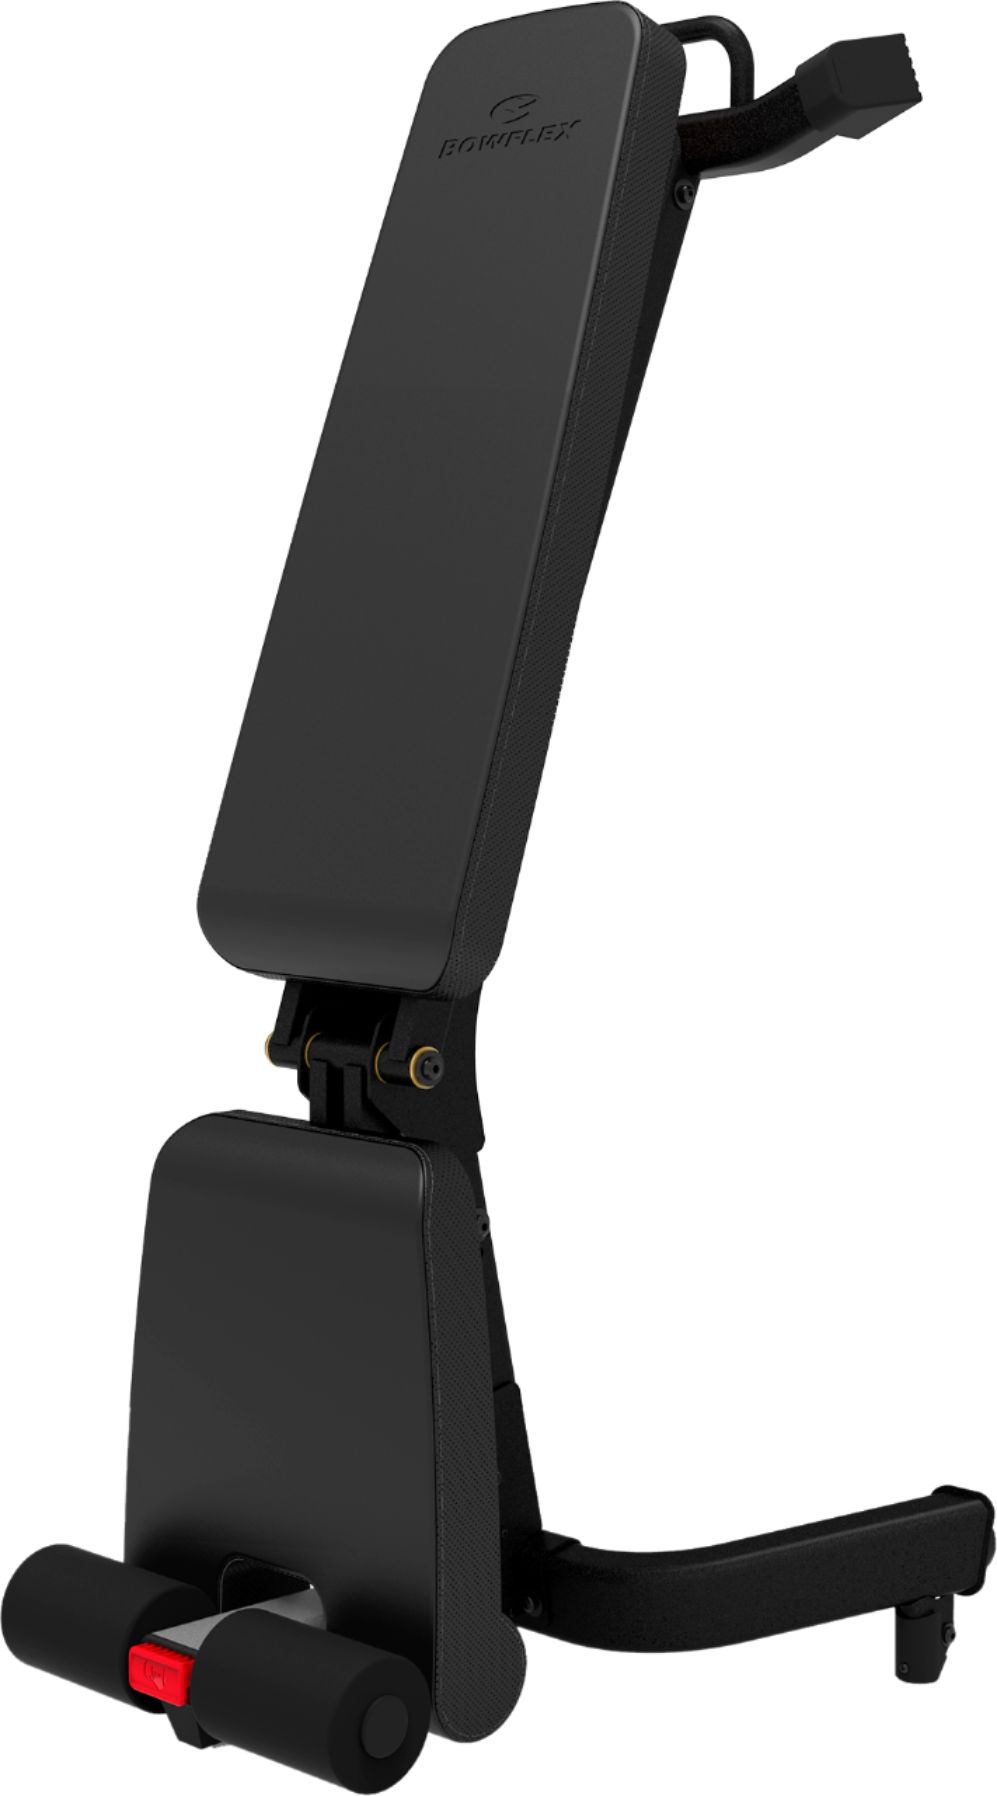 Angle View: BowFlex - SelectTech 3.1S Bench - Black